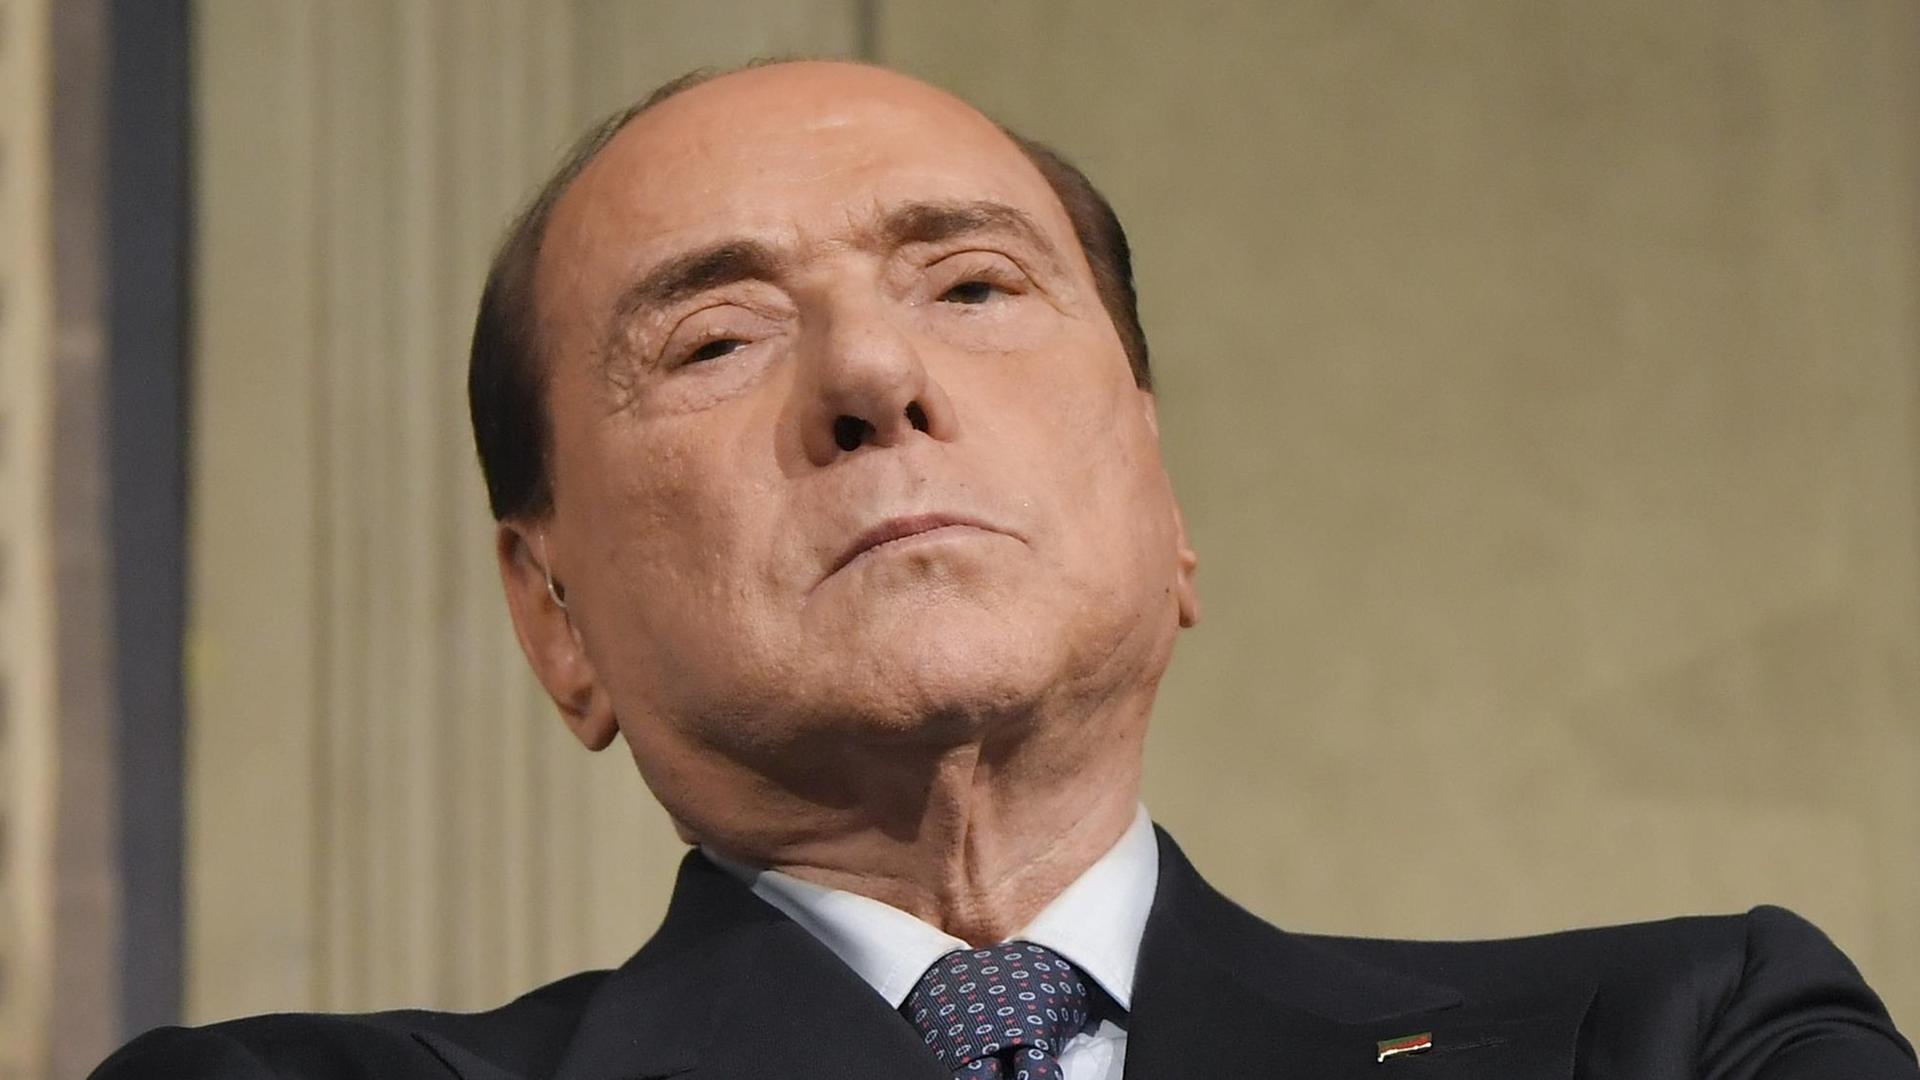 Der Vorsitzende der Partei Forza Italia, Silvio Berlusconi, auf einer Pressekonferenz am 7. Mai 2018.